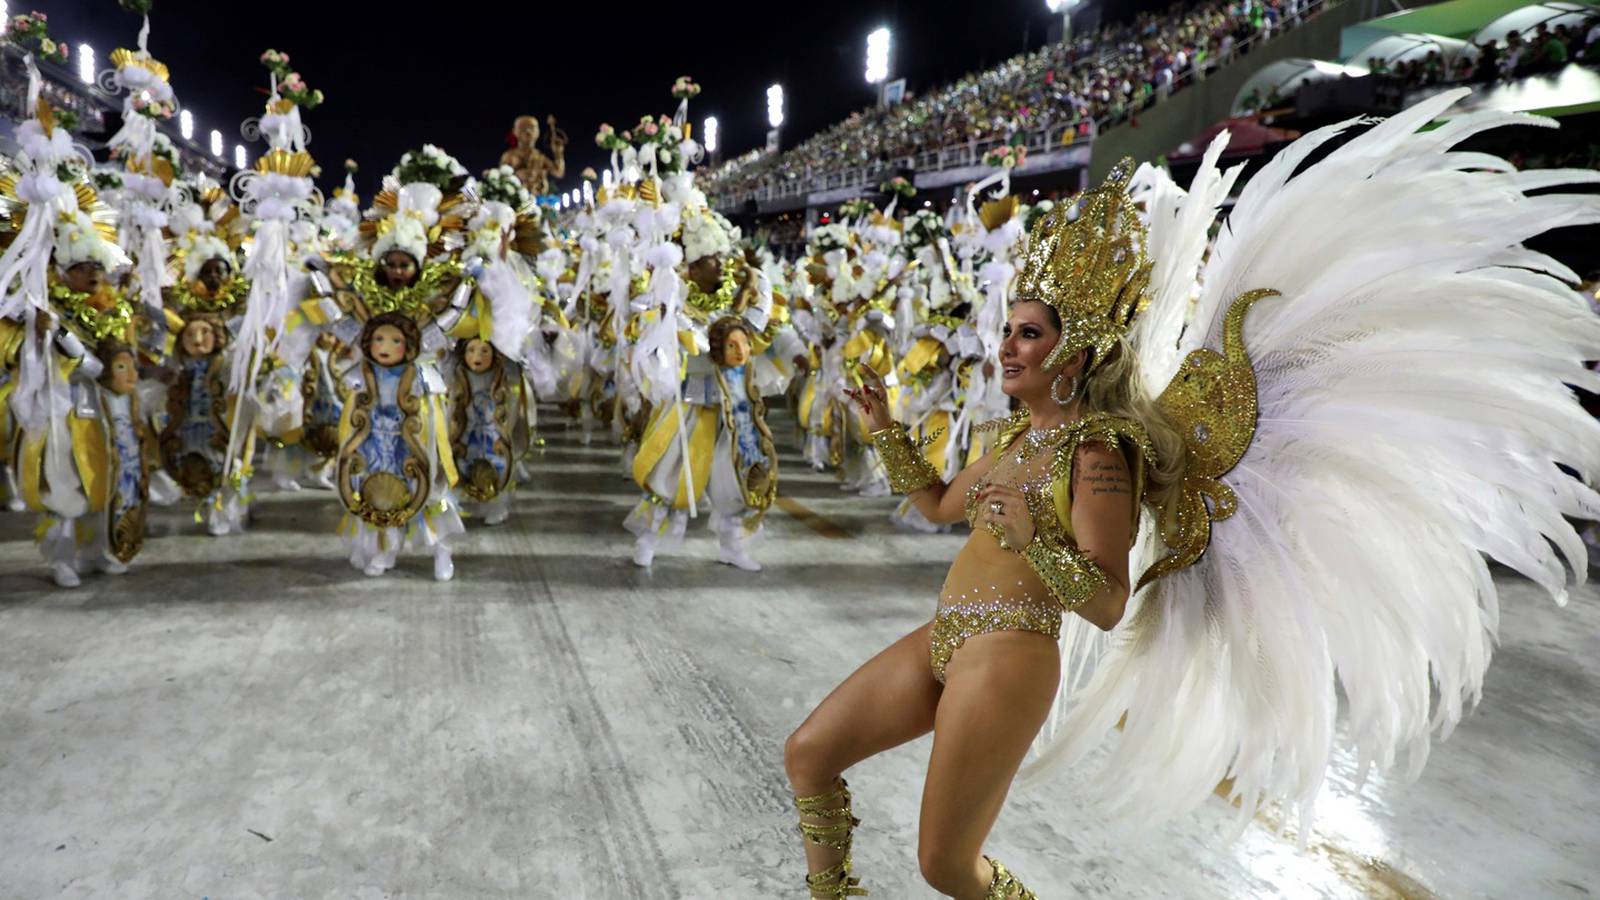 In Pics: Brazil's spectacular Rio Carnival returns